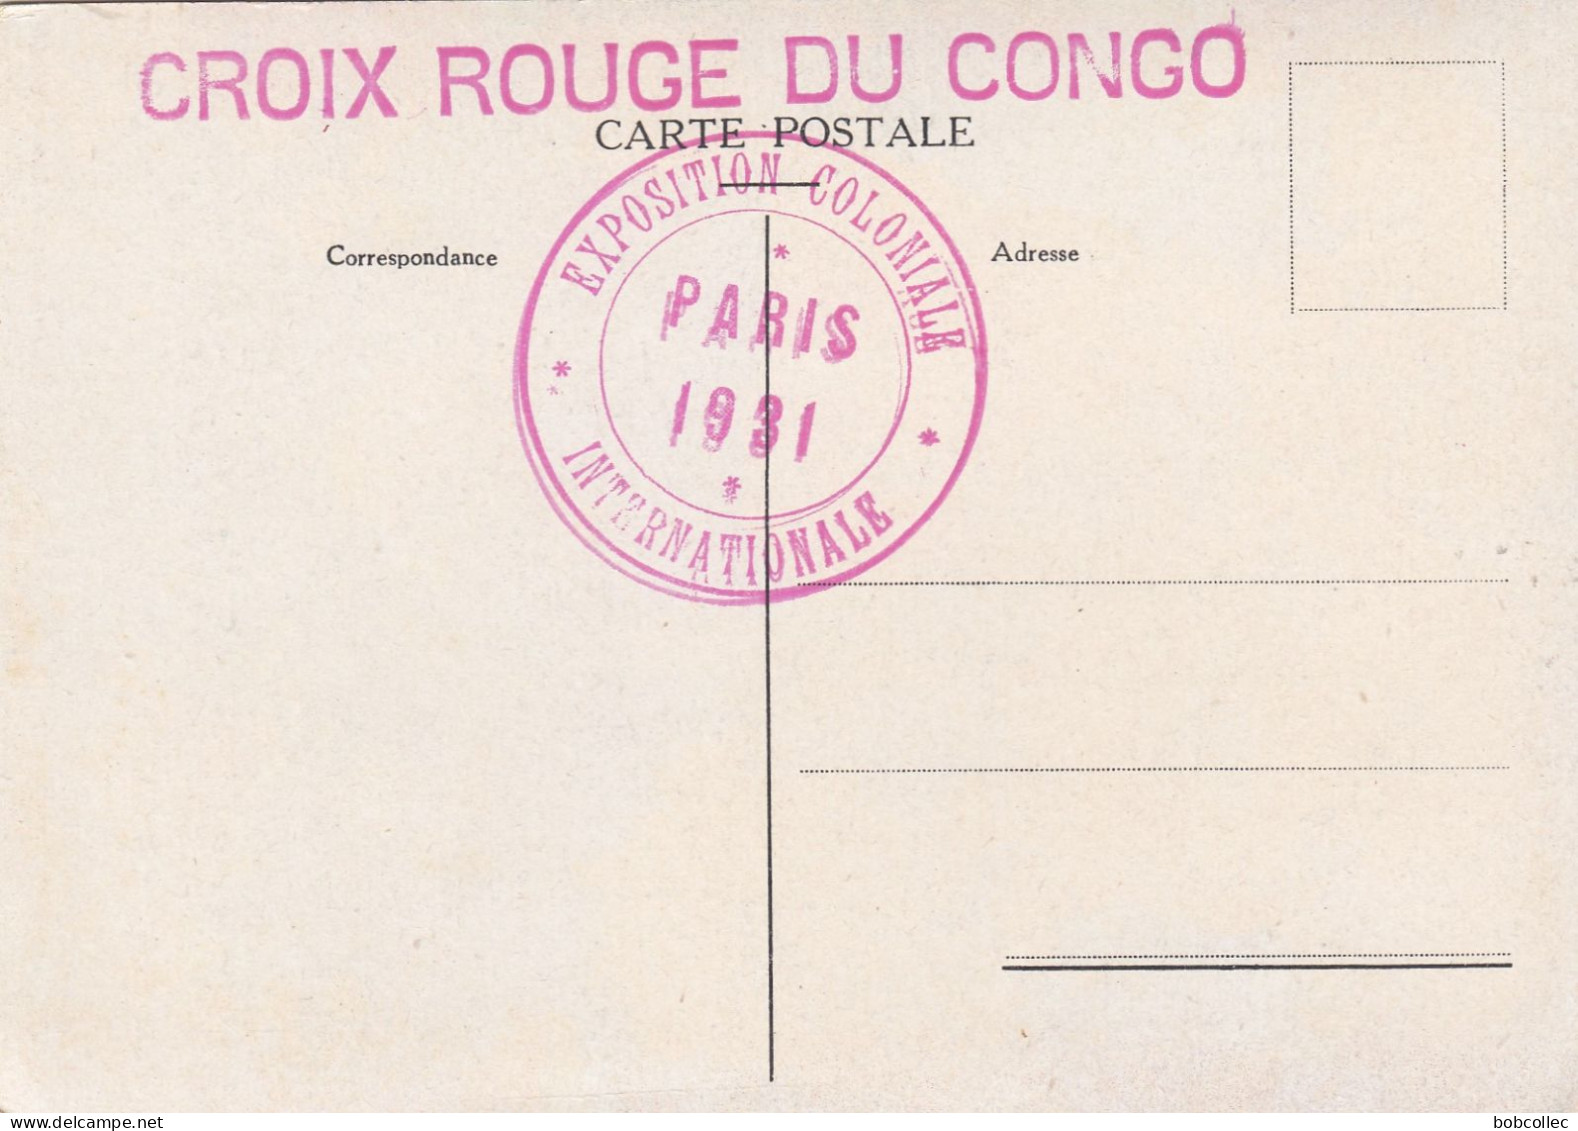 CROIX ROUGE DU CONGO:  Femme Sorcière USUMBURA (Exposition Coloniale Paris 1931) - Rotes Kreuz